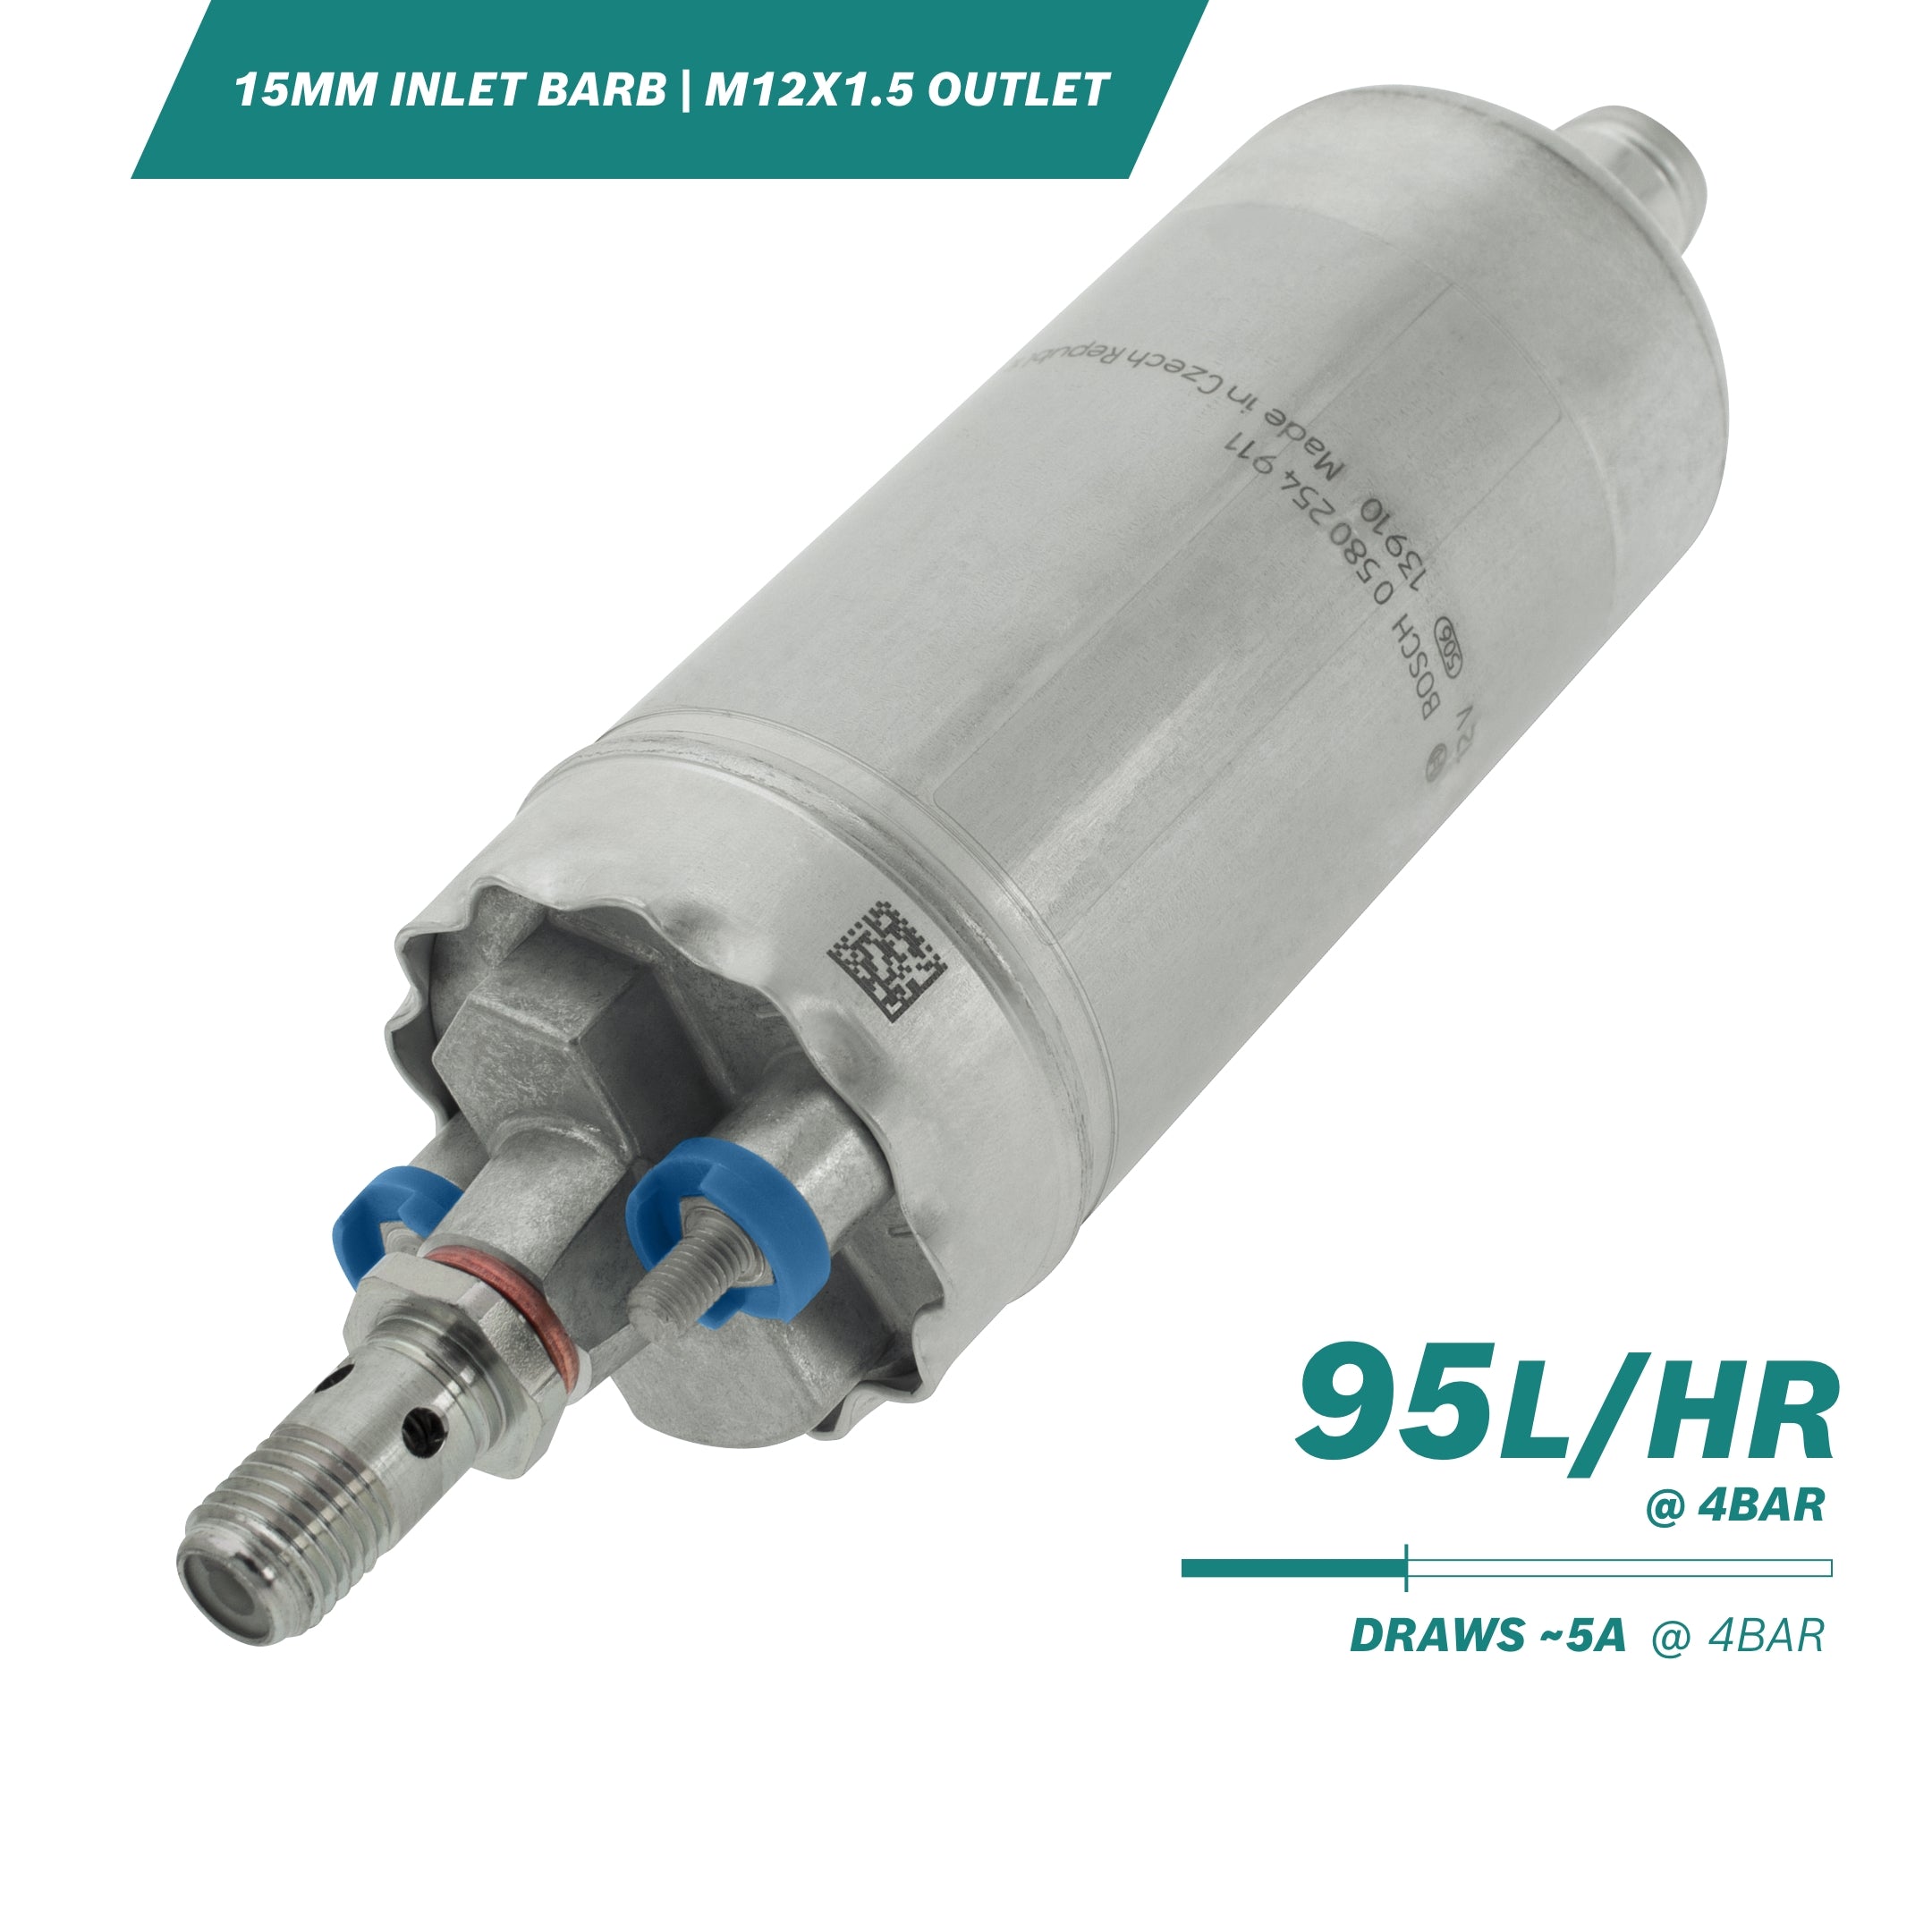 0 580 464 070 Bosch high flow 130l/h in-line fuel pump suitable